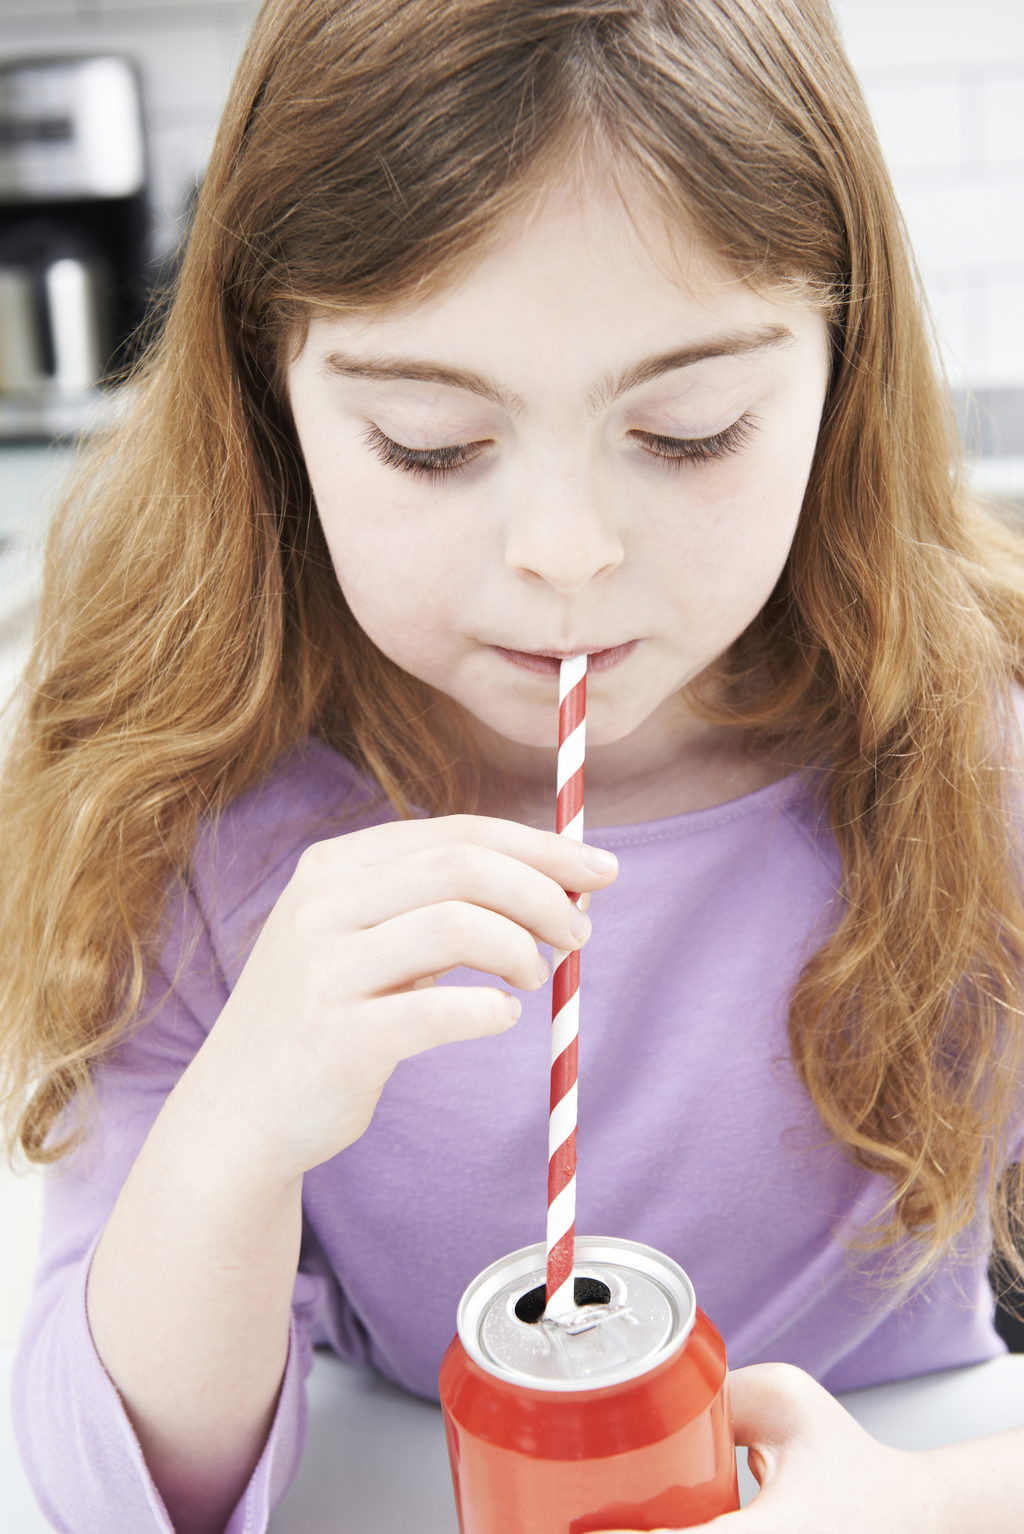 El refresco provoca irritabilidad e induce a la obesidad debido a su alta concentración de azúcares y cafeína. Los niños no deberían tomar refrescos.